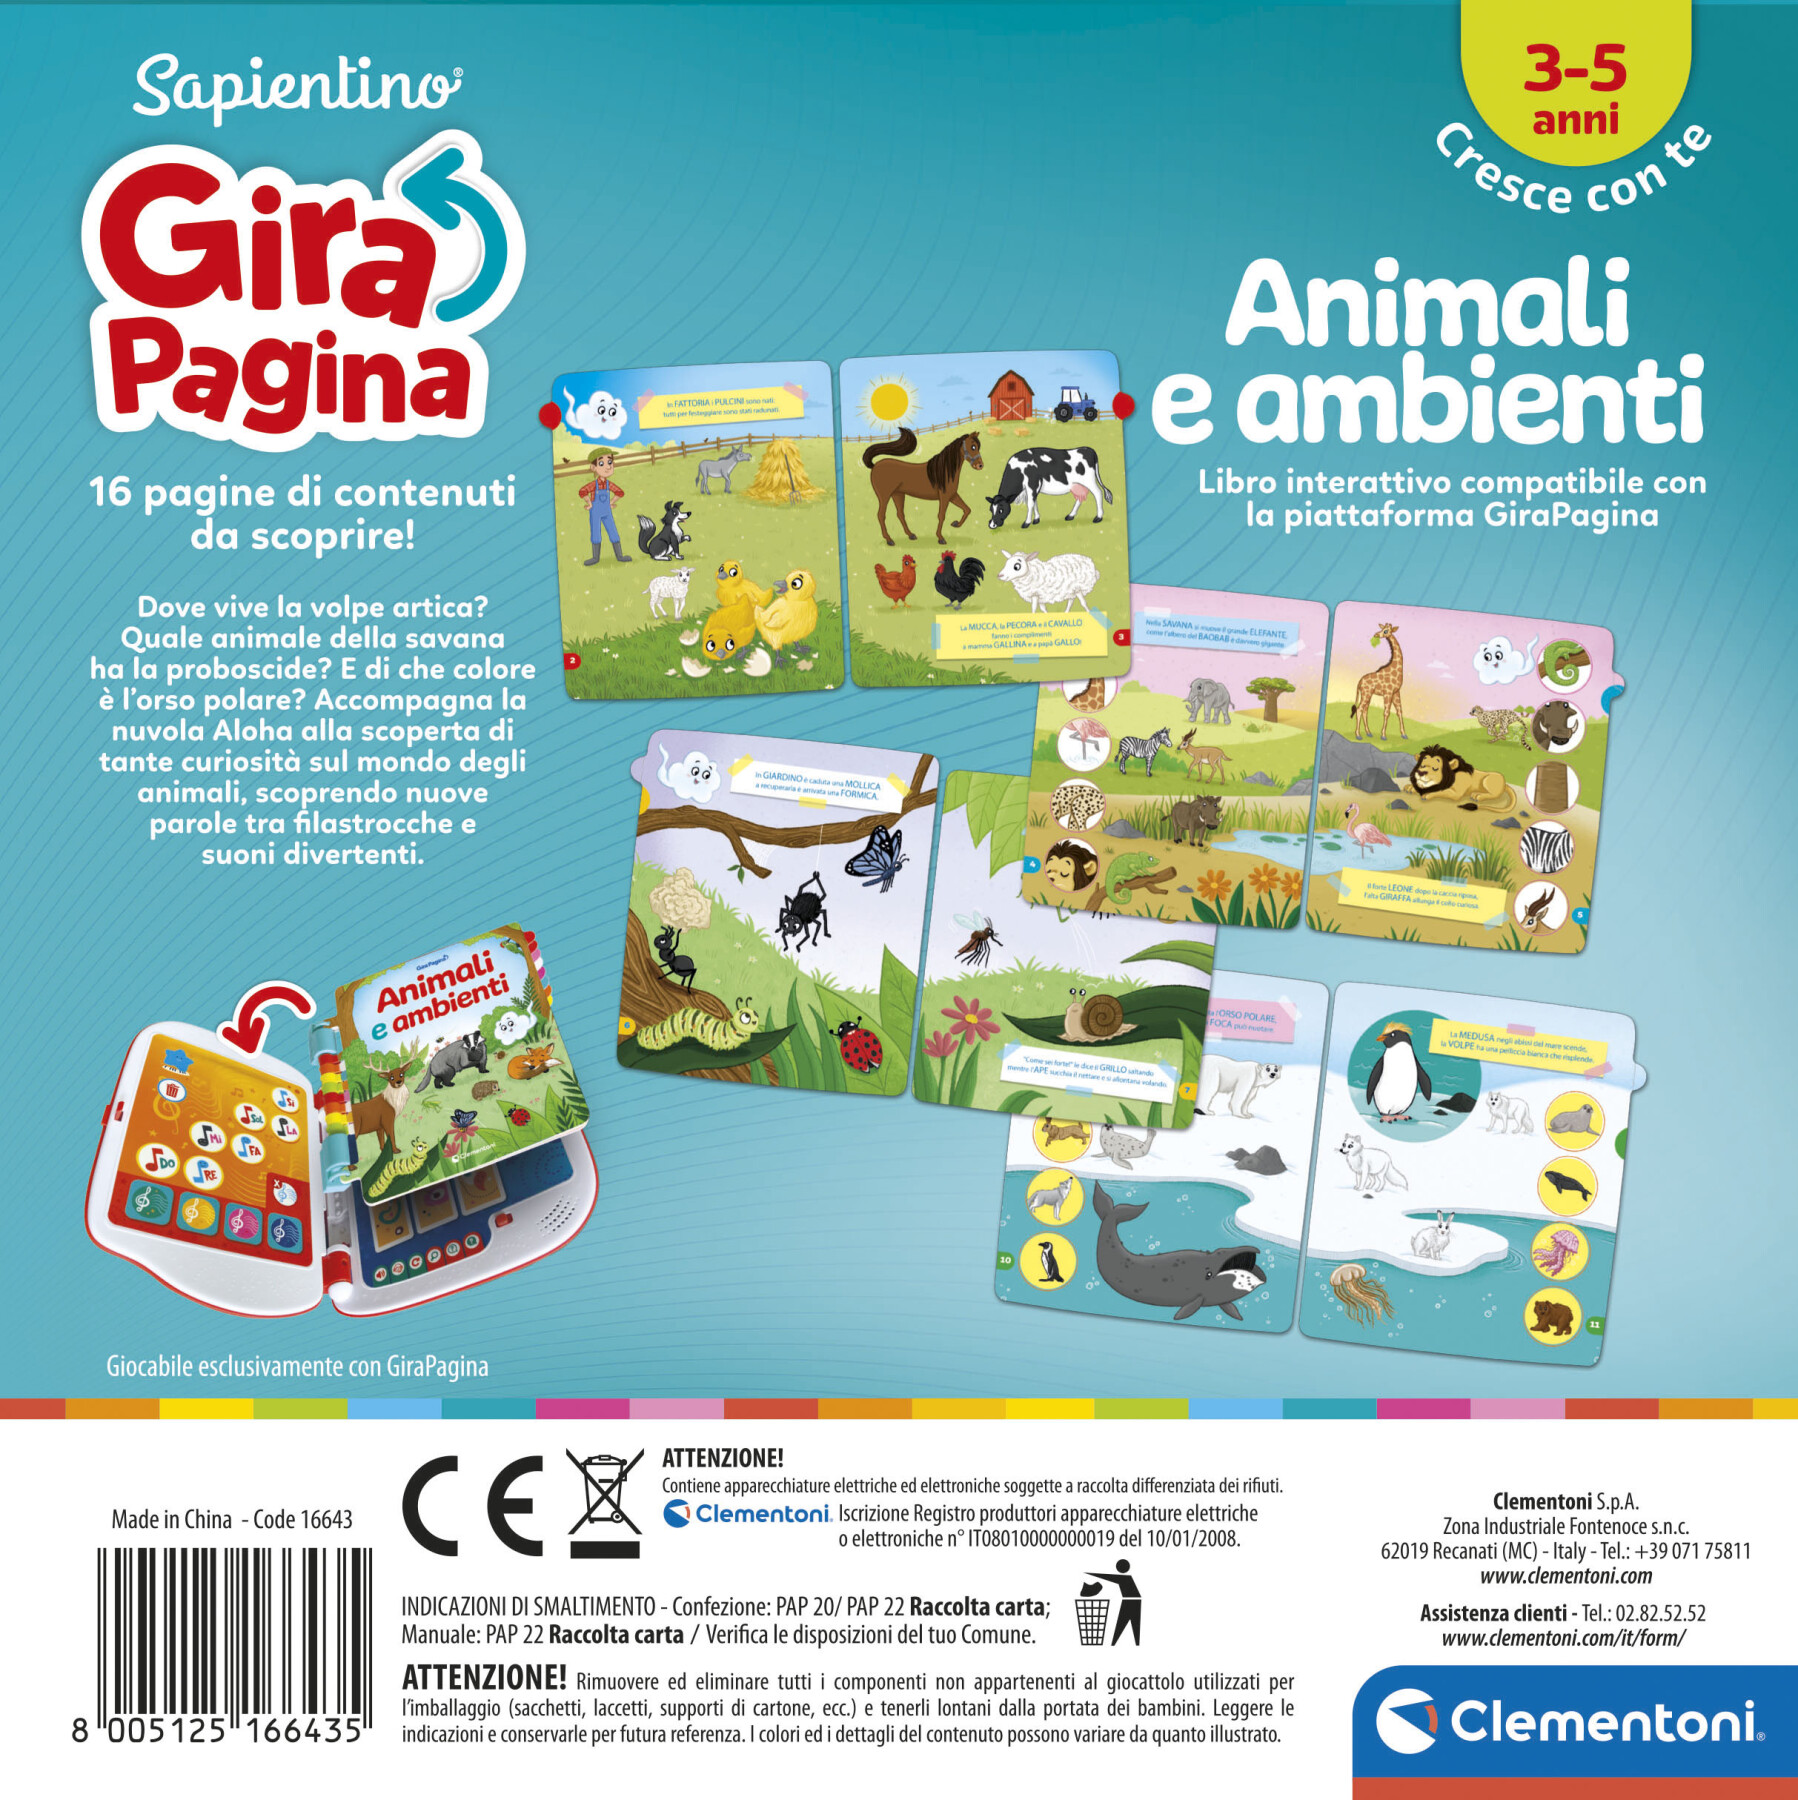 Sapientino - girapagina libro animali e ambienti - SAPIENTINO